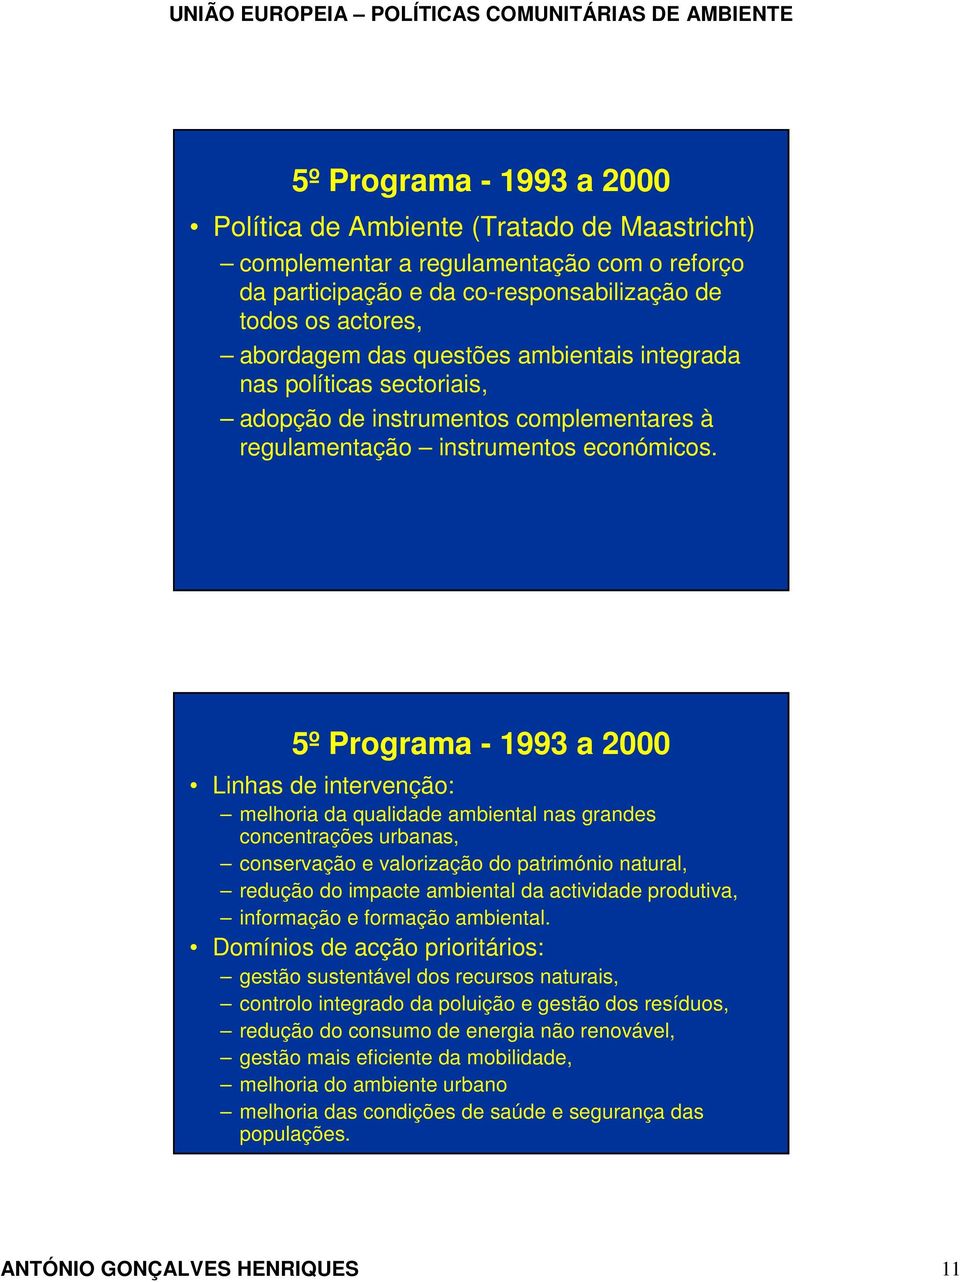 5º Programa - 1993 a 2000 Linhas de intervenção: melhoria da qualidade ambiental nas grandes concentrações urbanas, conservação e valorização do património natural, redução do impacte ambiental da